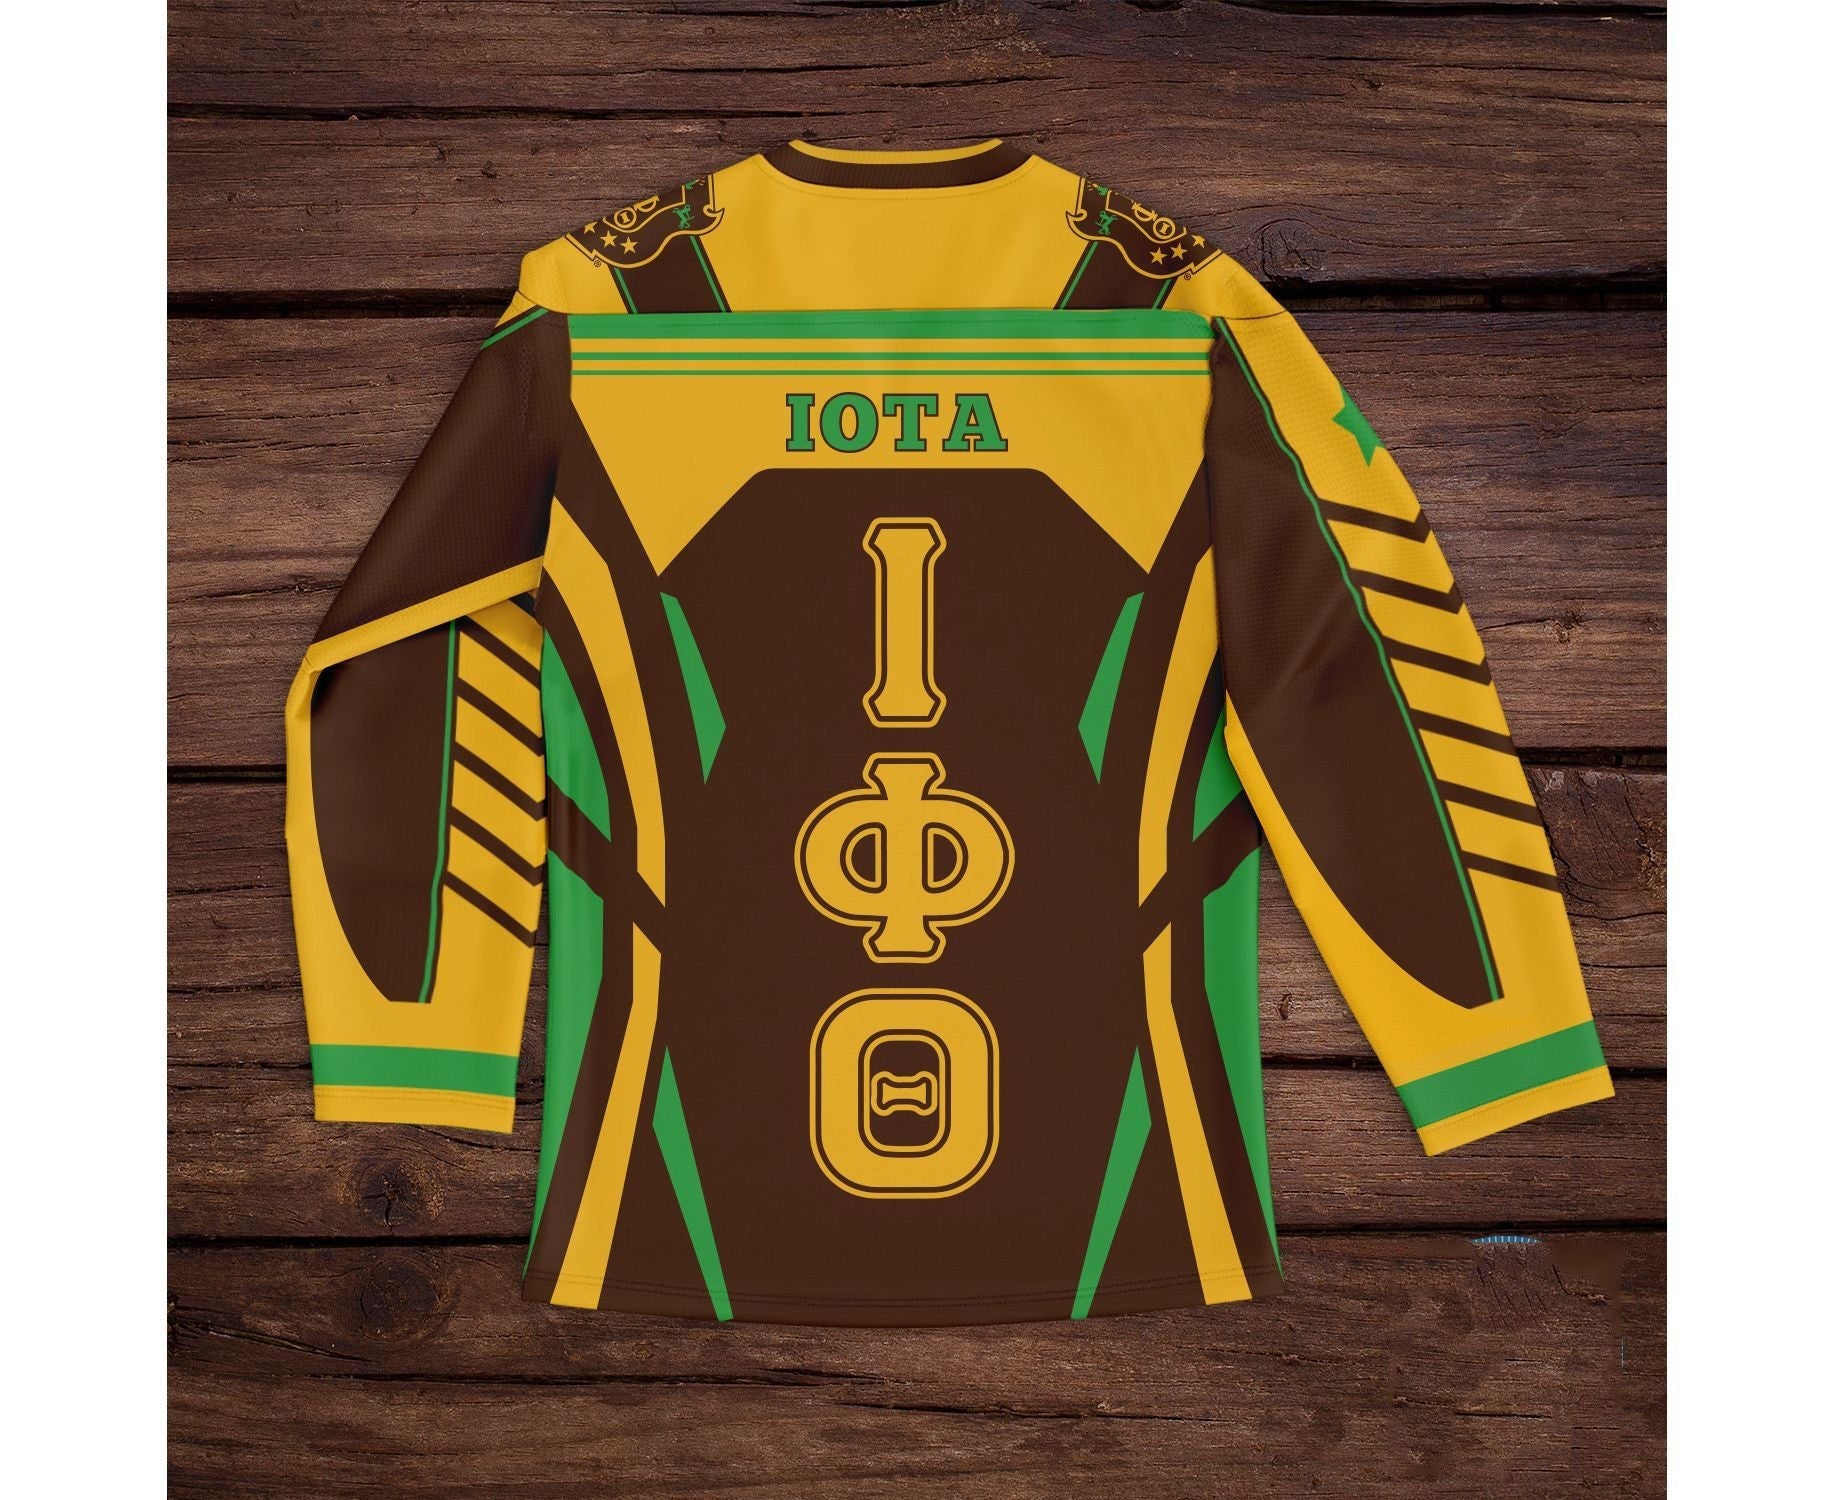 Fraternity Hockey Jersey - Iota Phi Theta Armor Hockey Jersey